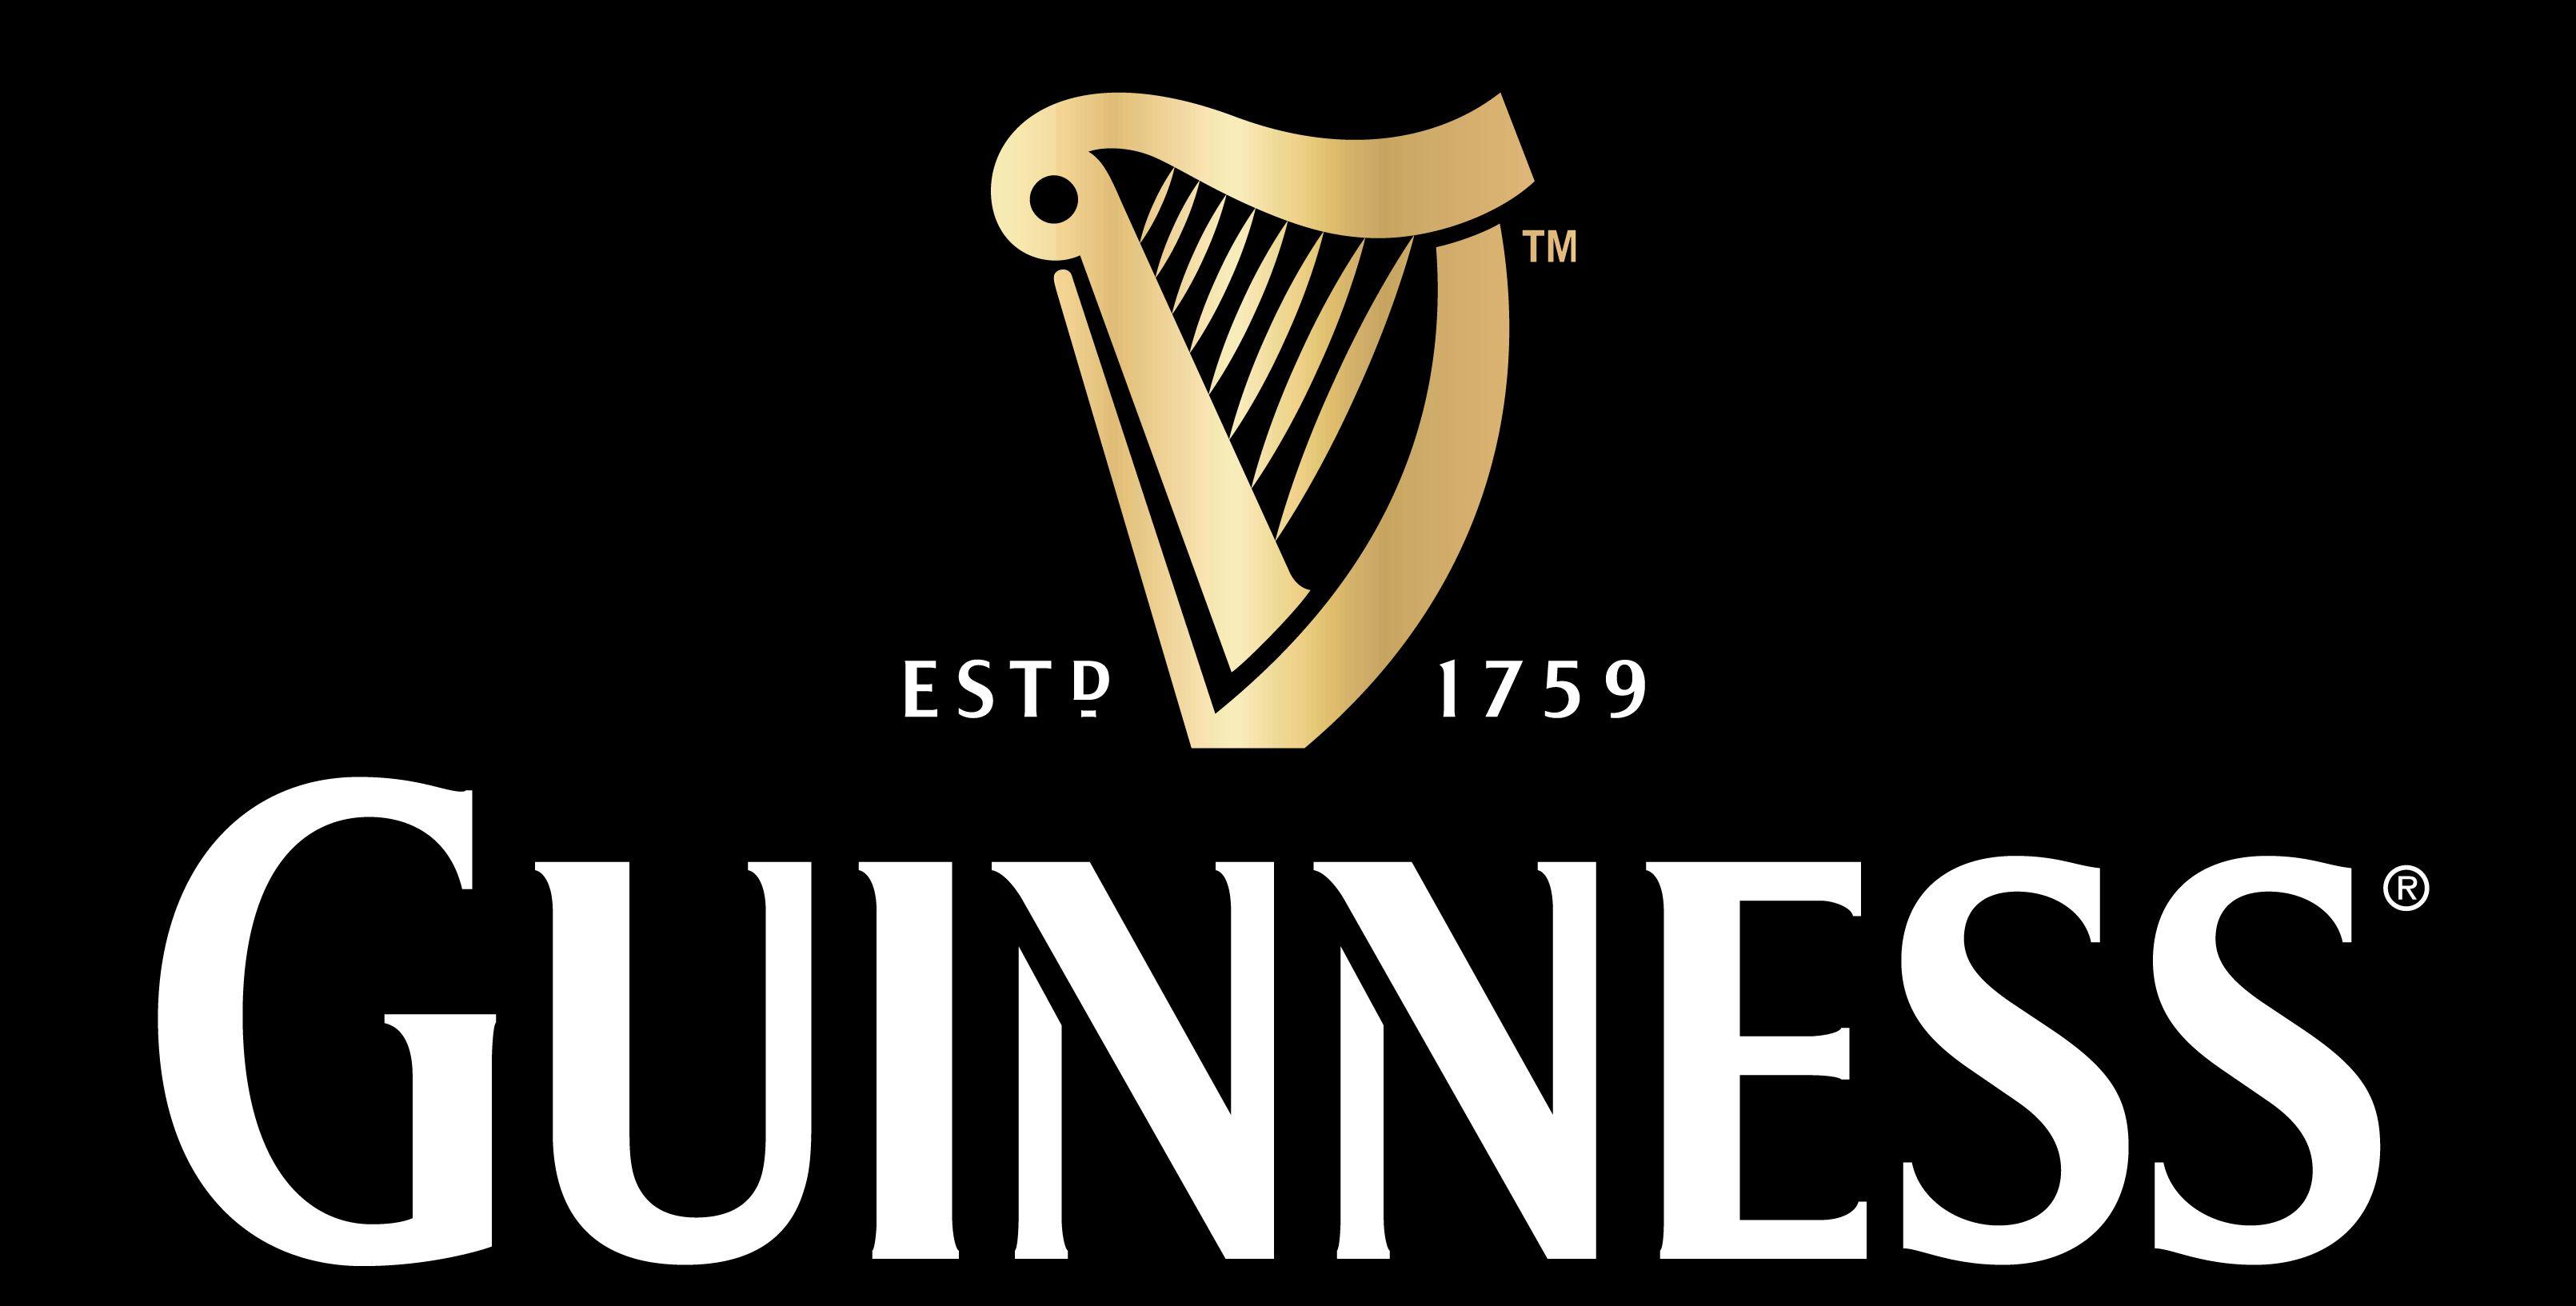 Guinness Stout Logo - Guinness beer Logos